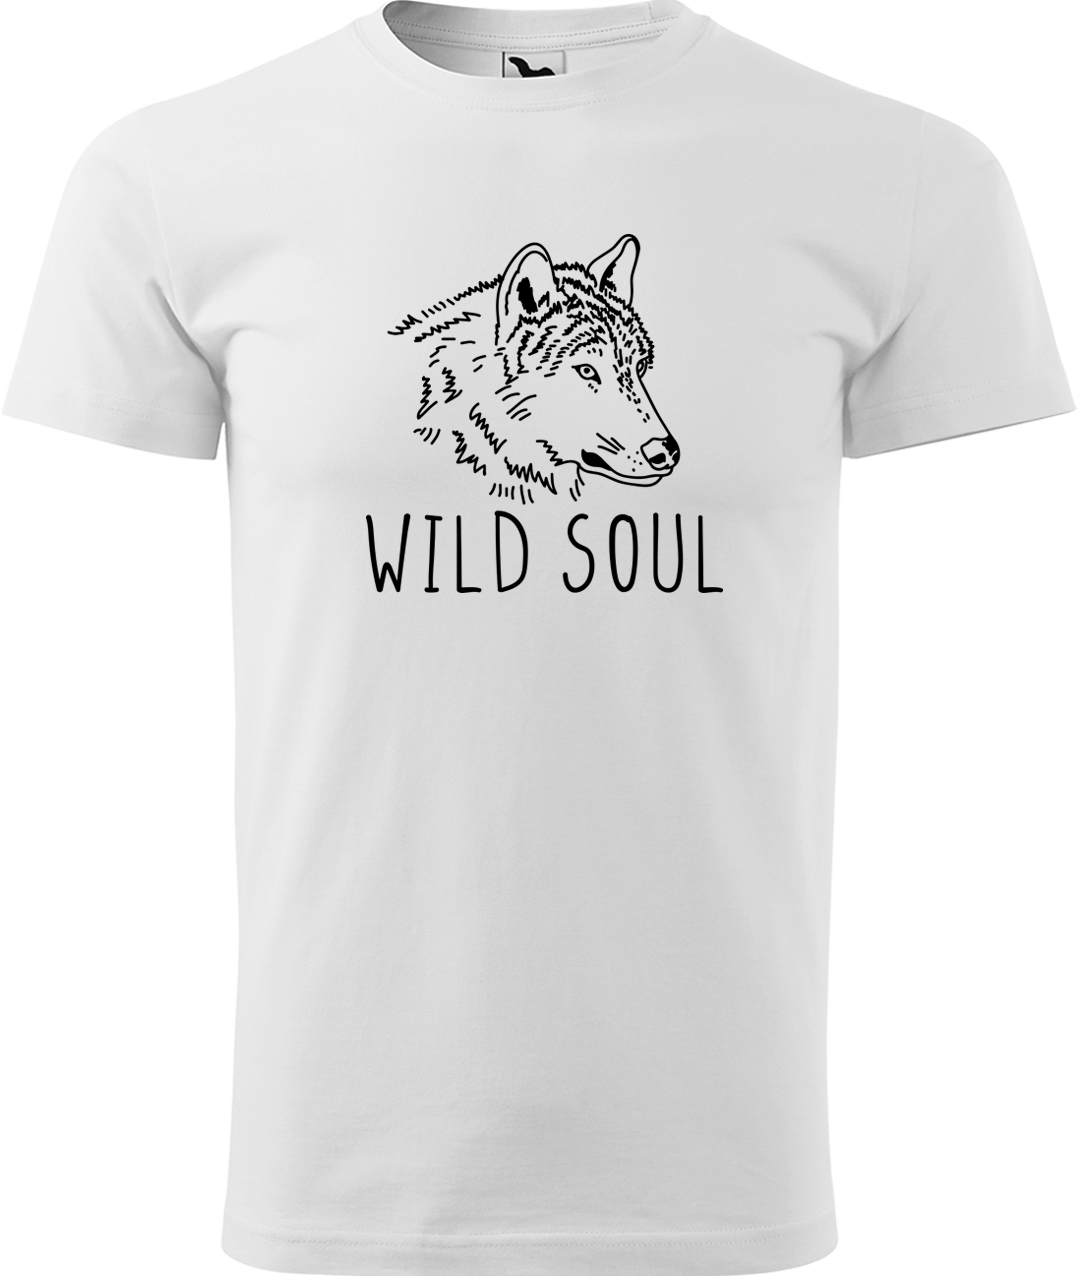 Pánské tričko s vlkem - Wild soul Velikost: M, Barva: Bílá (00), Střih: pánský